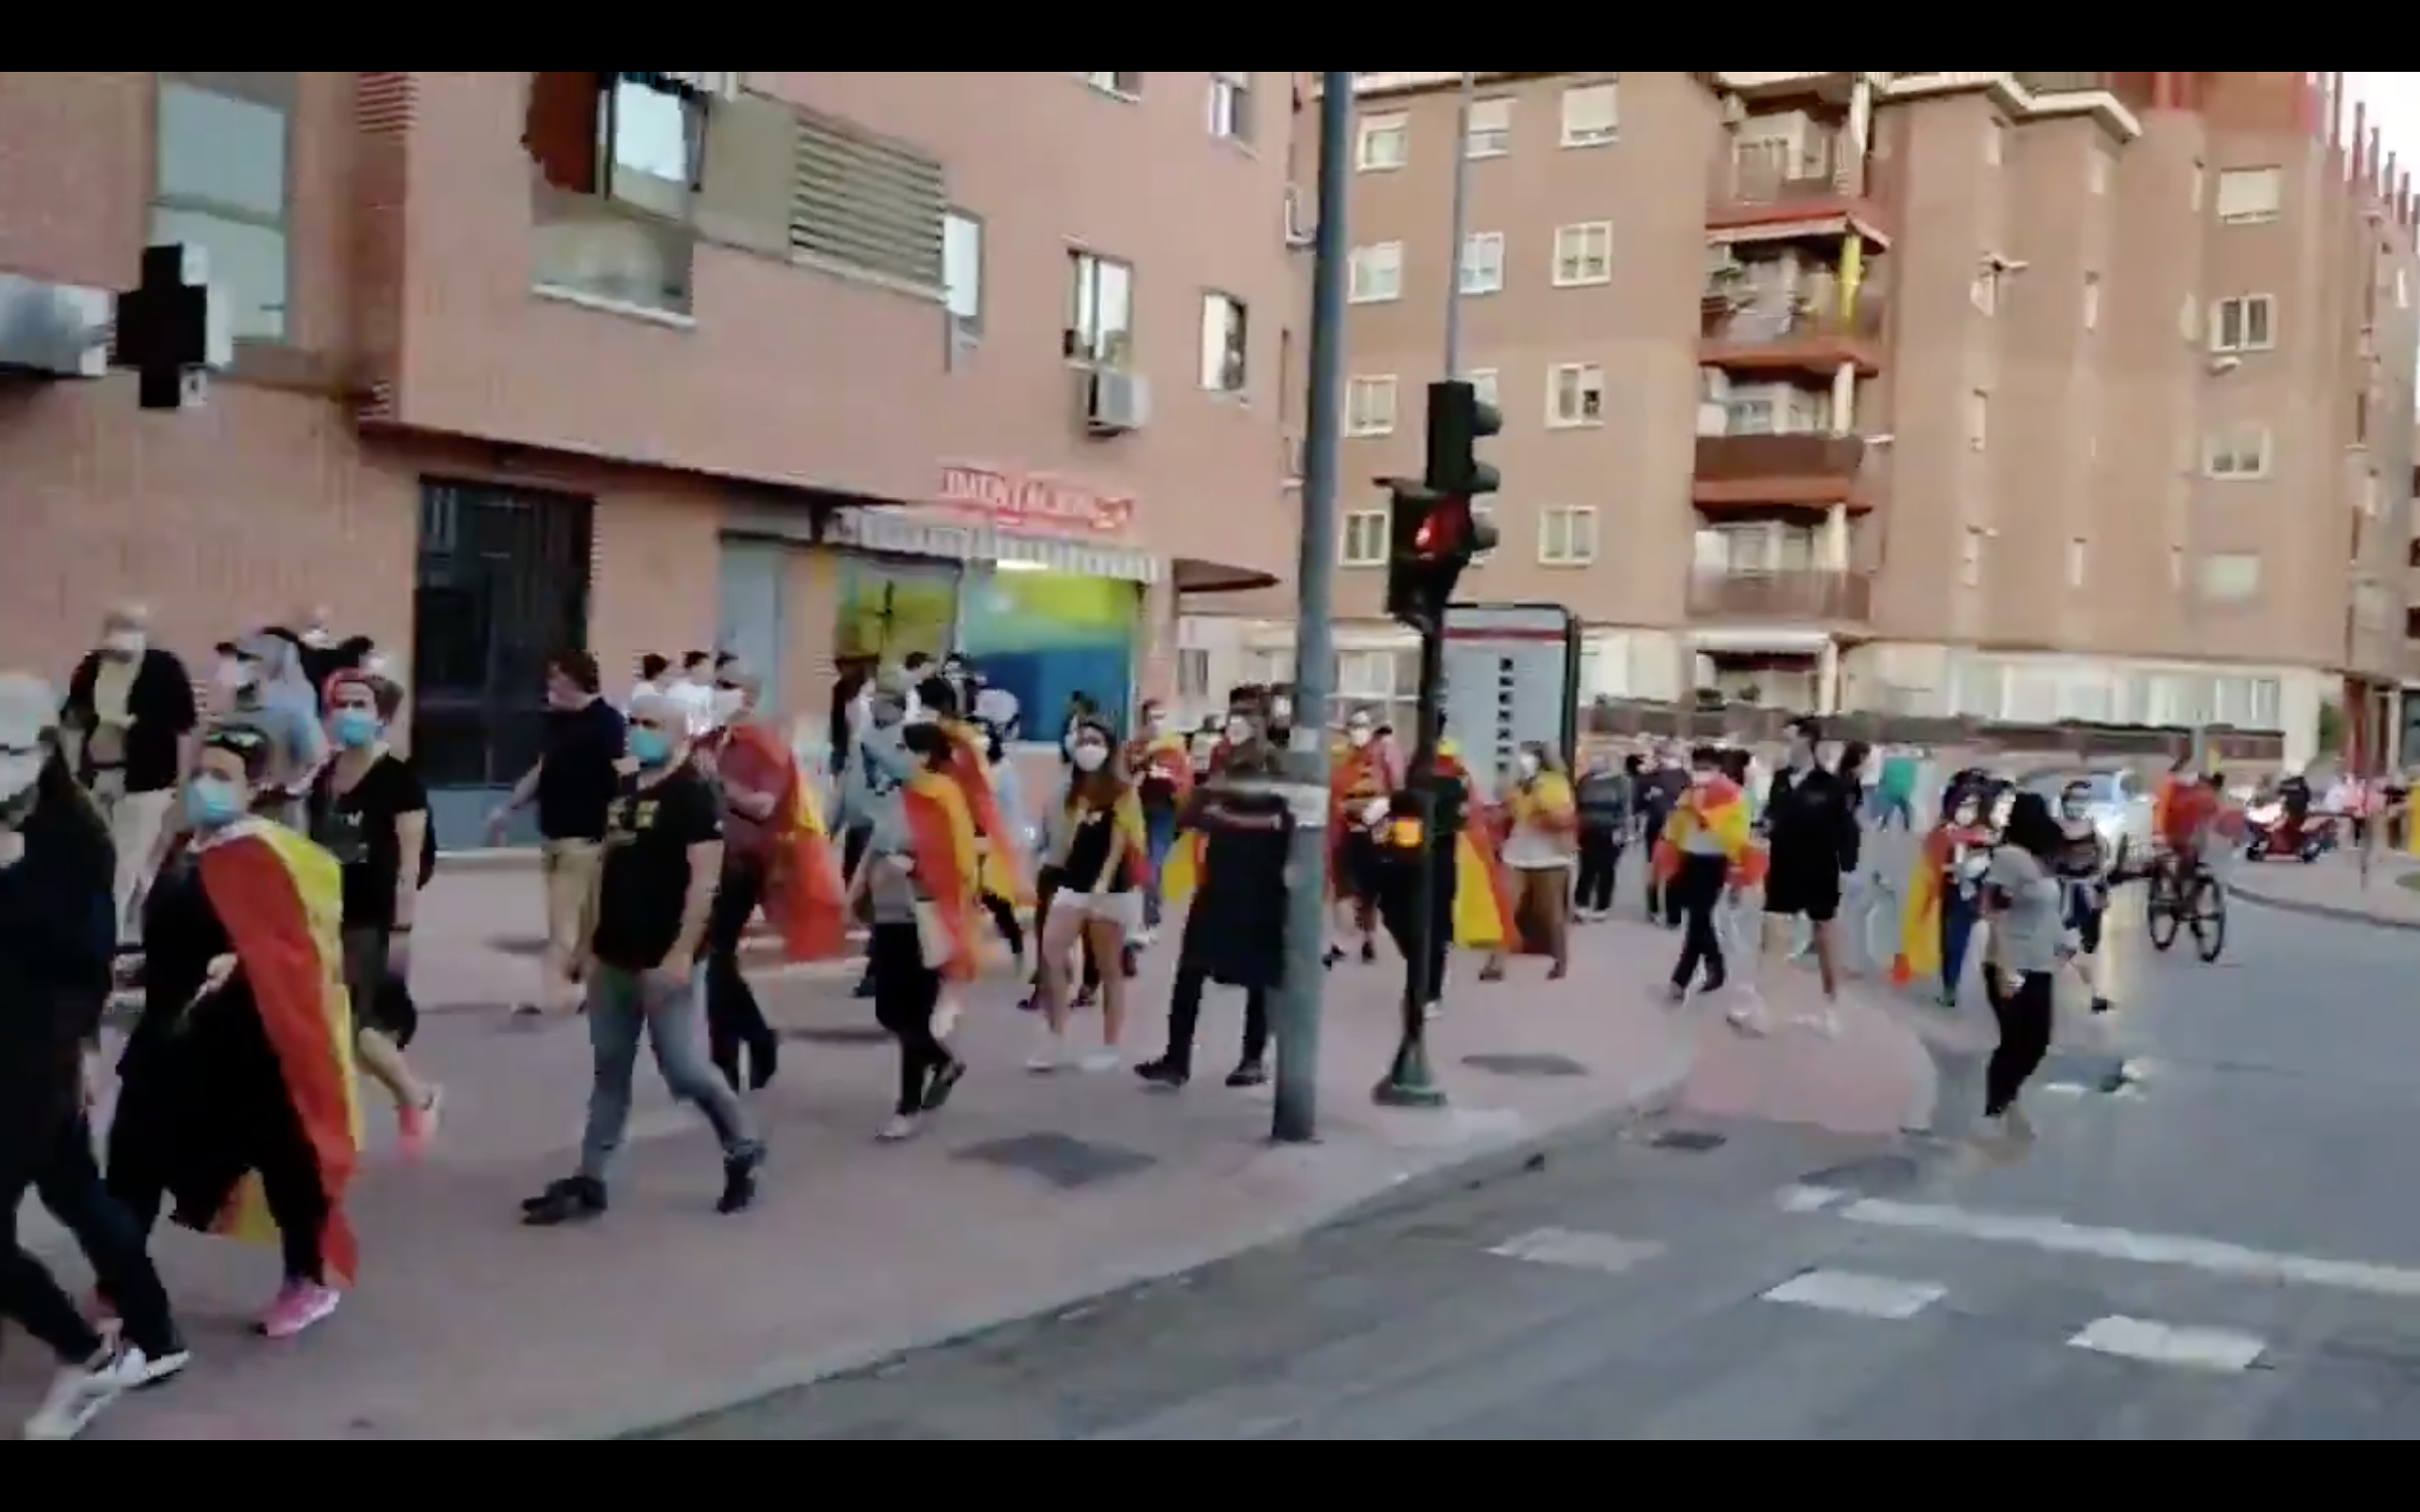 VÍDEO | Coronapijos y ultras, a sus anchas por Alcalá de Henares